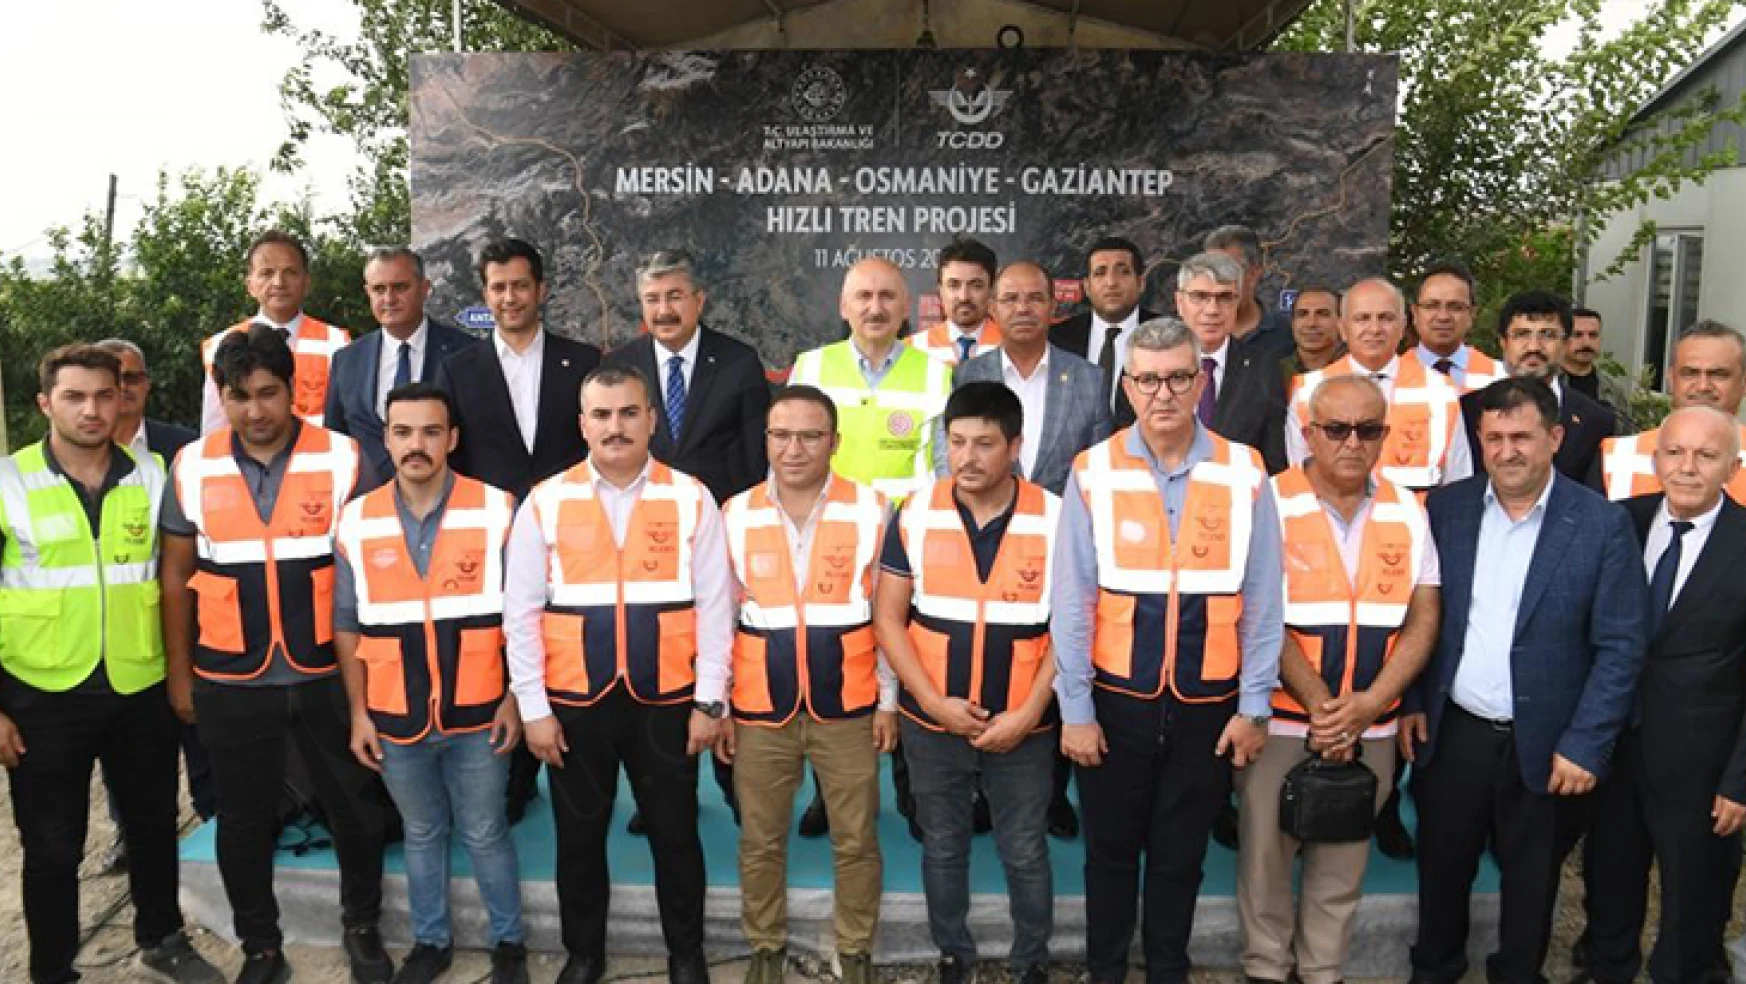 Mersin-Adana-Osmaniye-Gaziantep hızlı tren projesi